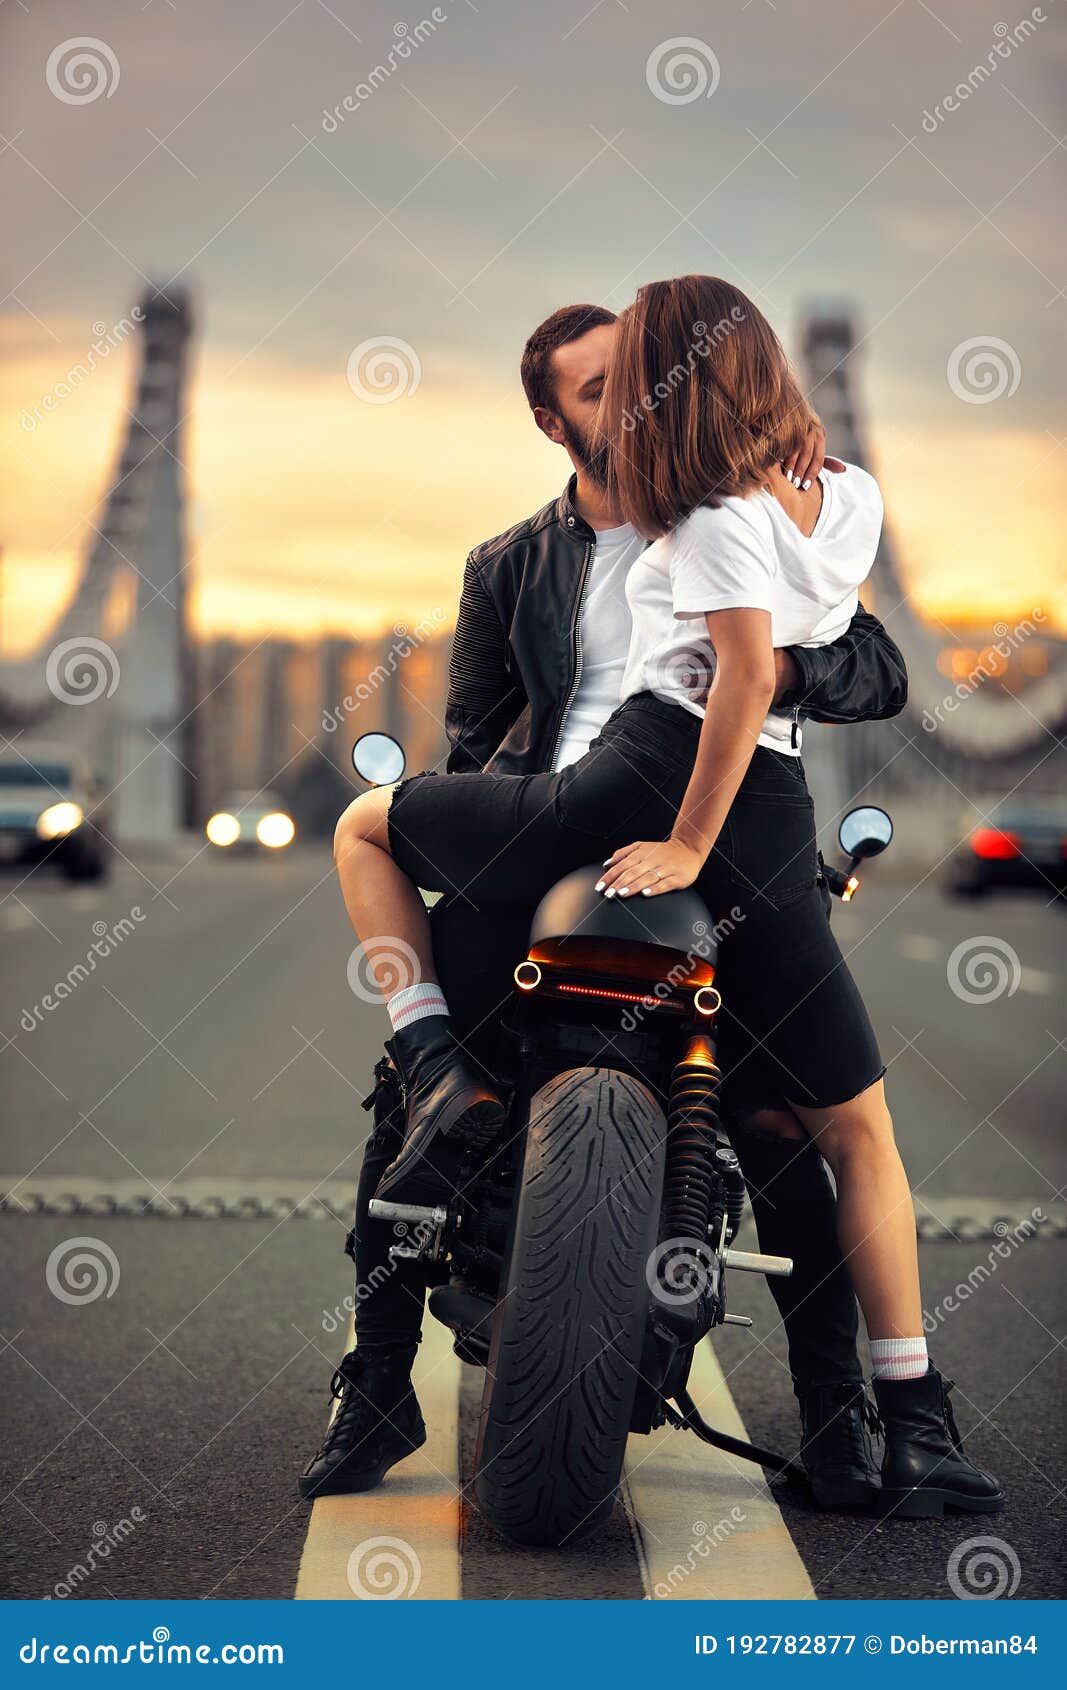 Biker girl and men seksi slike